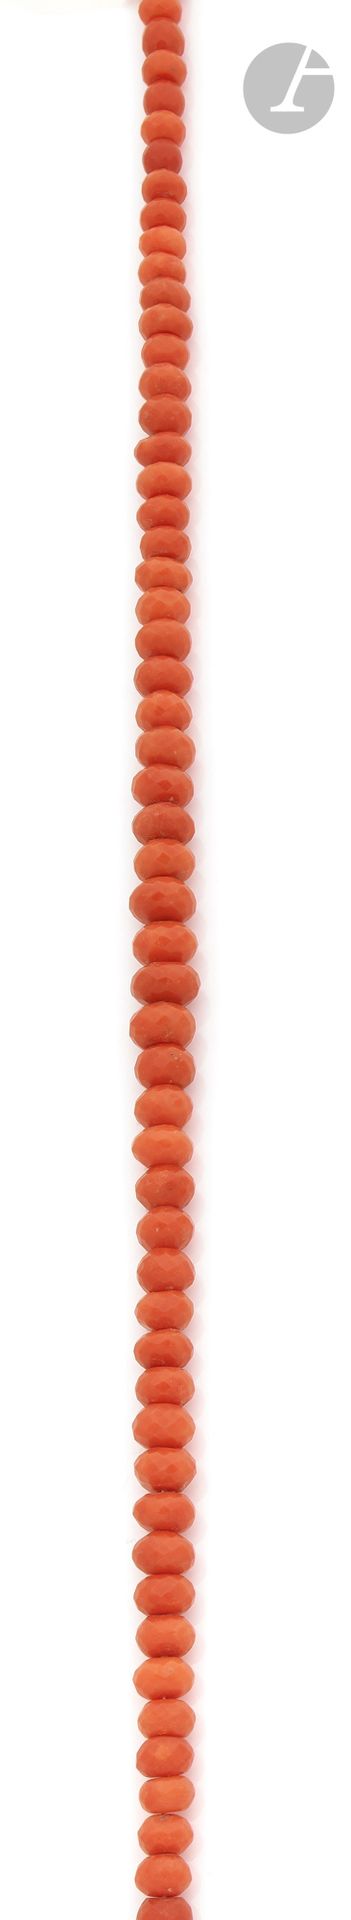 Null - 秋季多面体珊瑚球项链，小金扣。长度：约42厘米。毛重：45.5克（附有6个切面的珊瑚球）

珊瑚珠项链